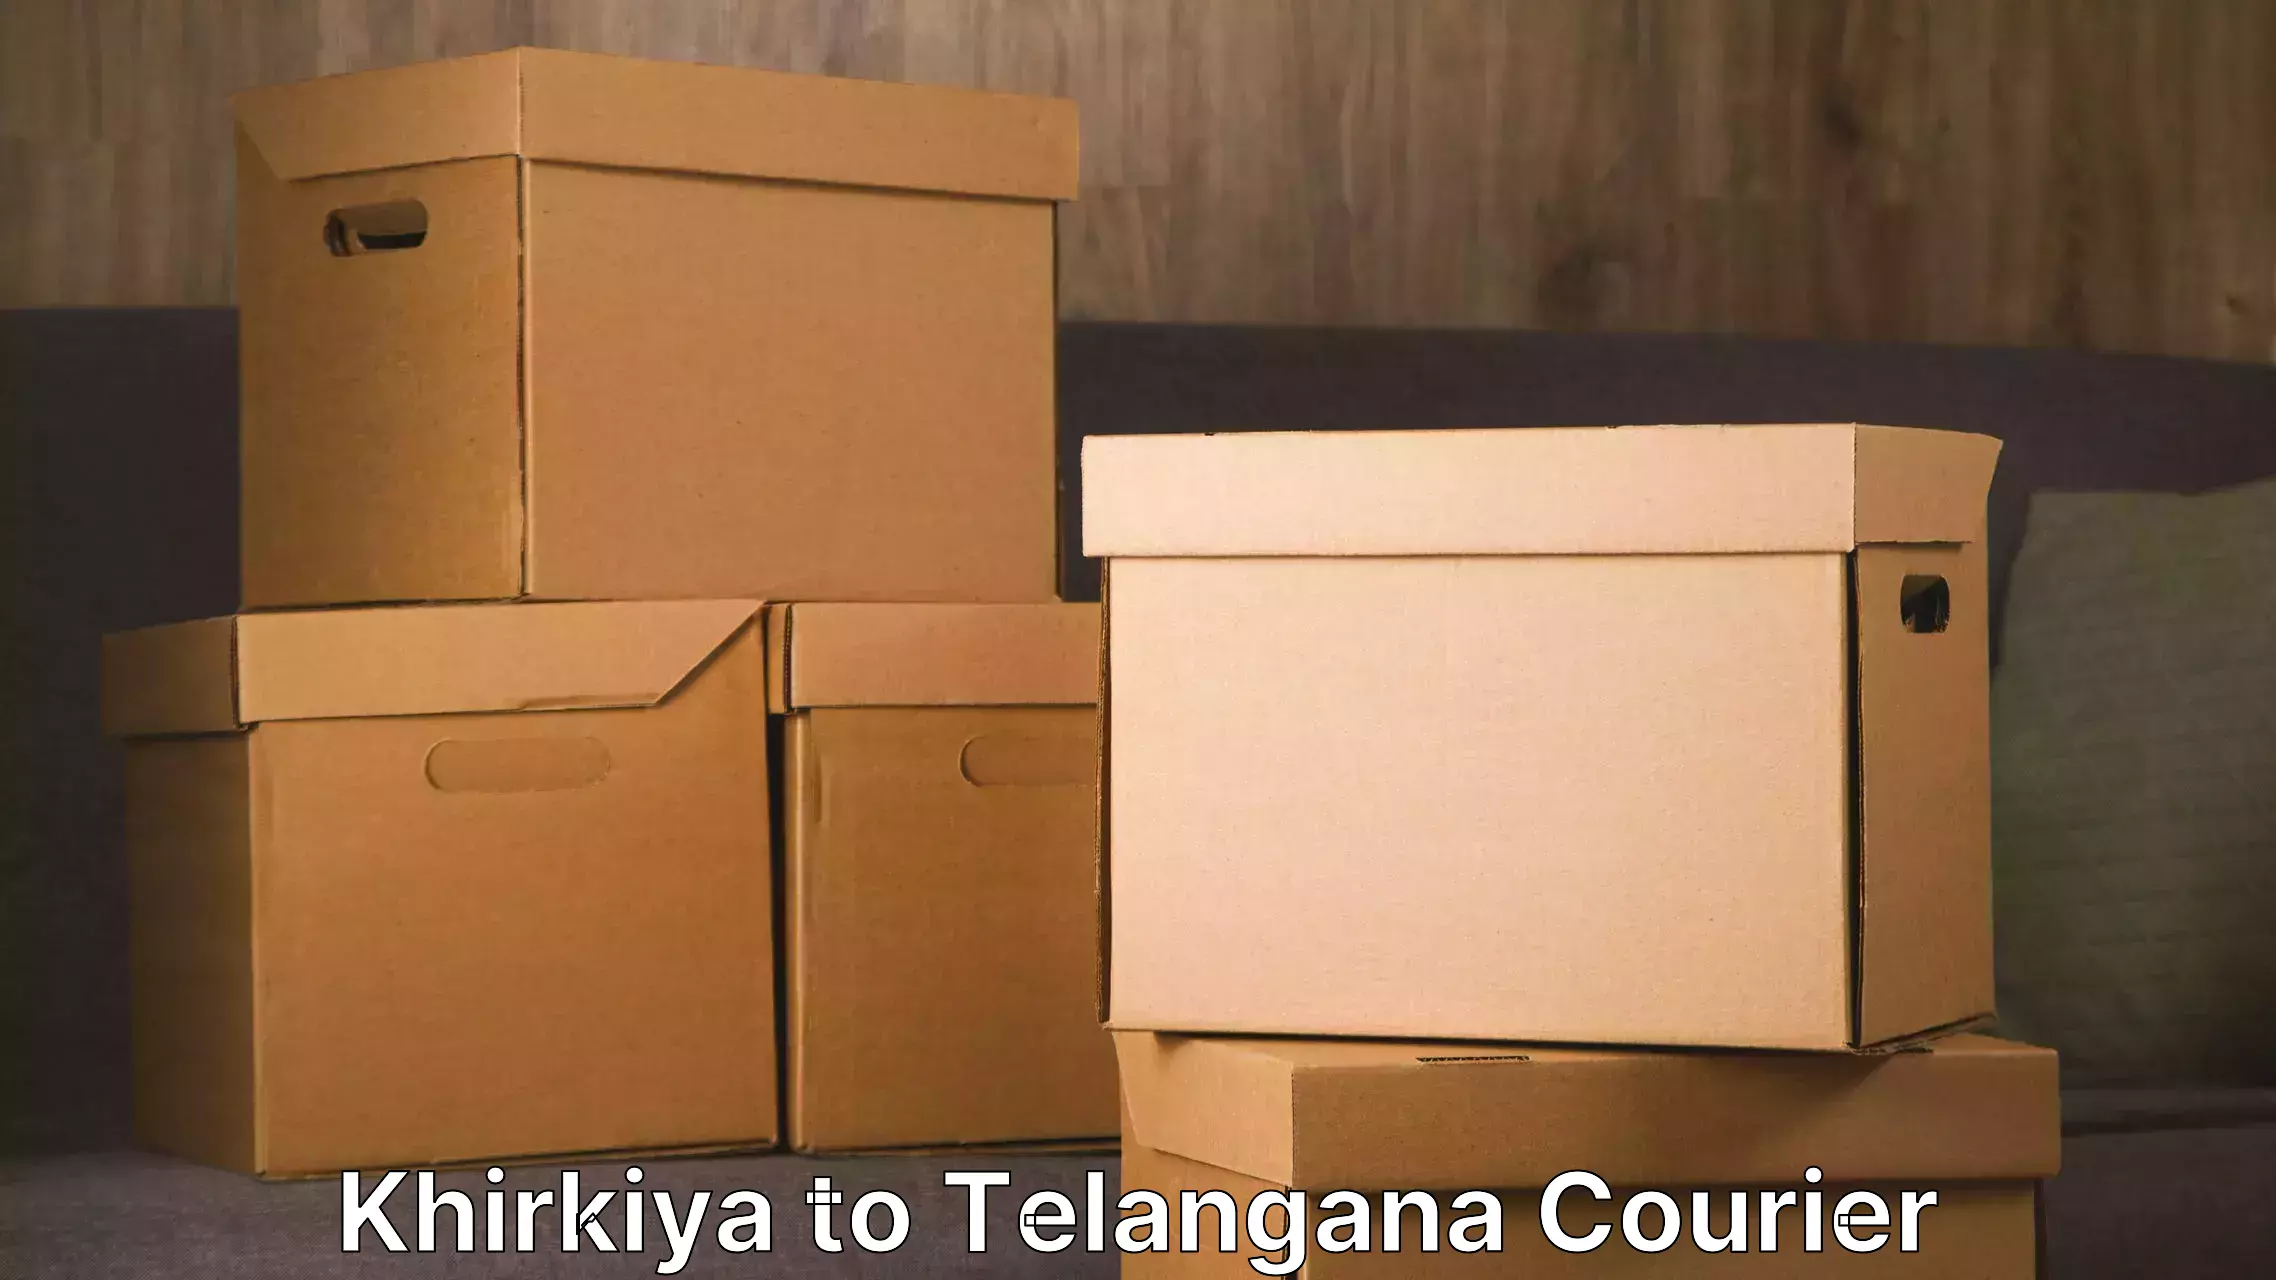 Furniture moving service Khirkiya to Telangana